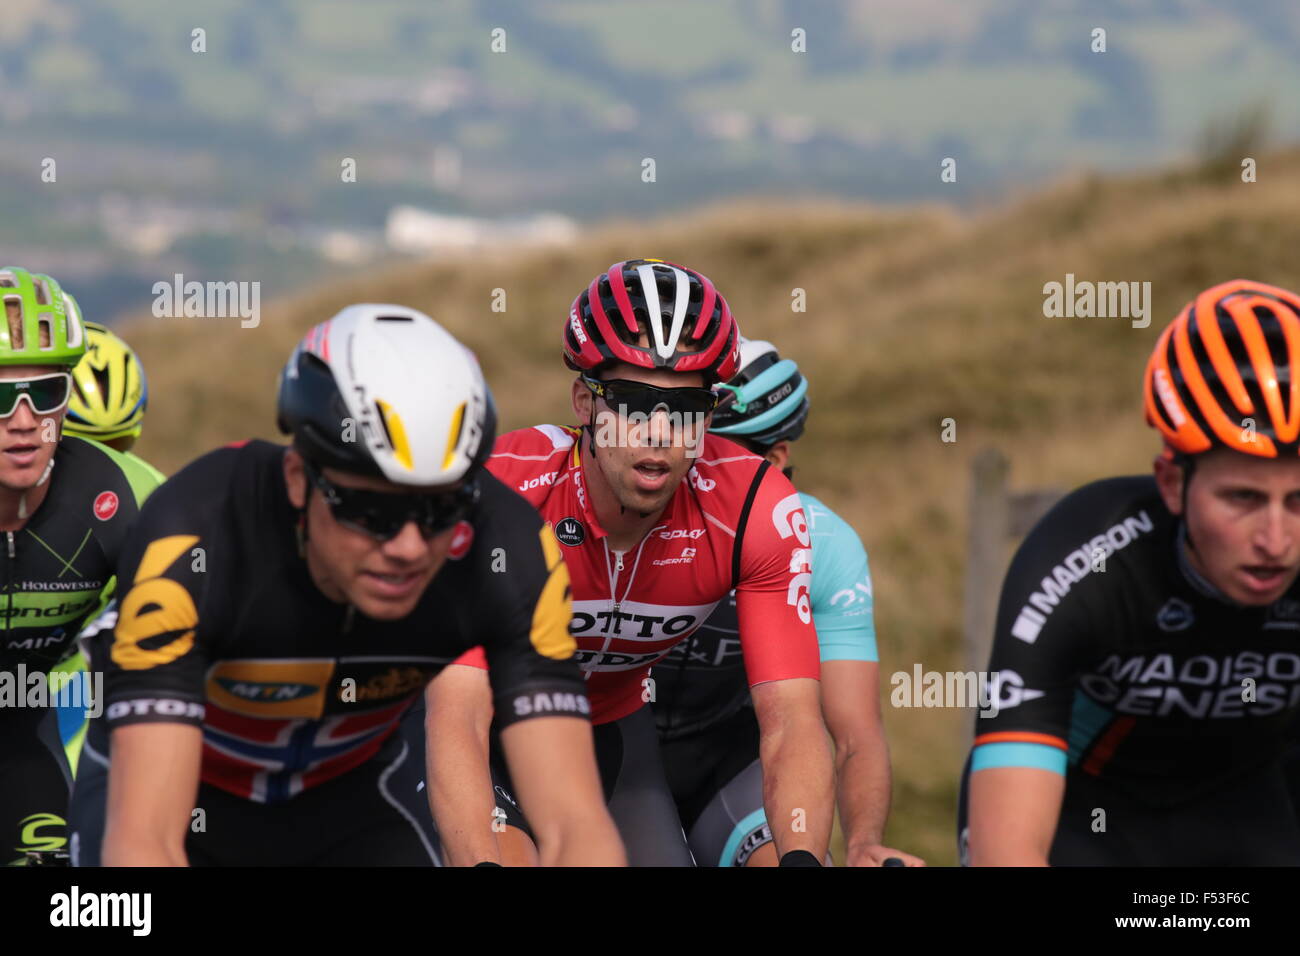 Vier Radfahrer tragen die Farben des Teams während der Tour of Britain 2015 Pendle bergauf Pedalieren Stockfoto